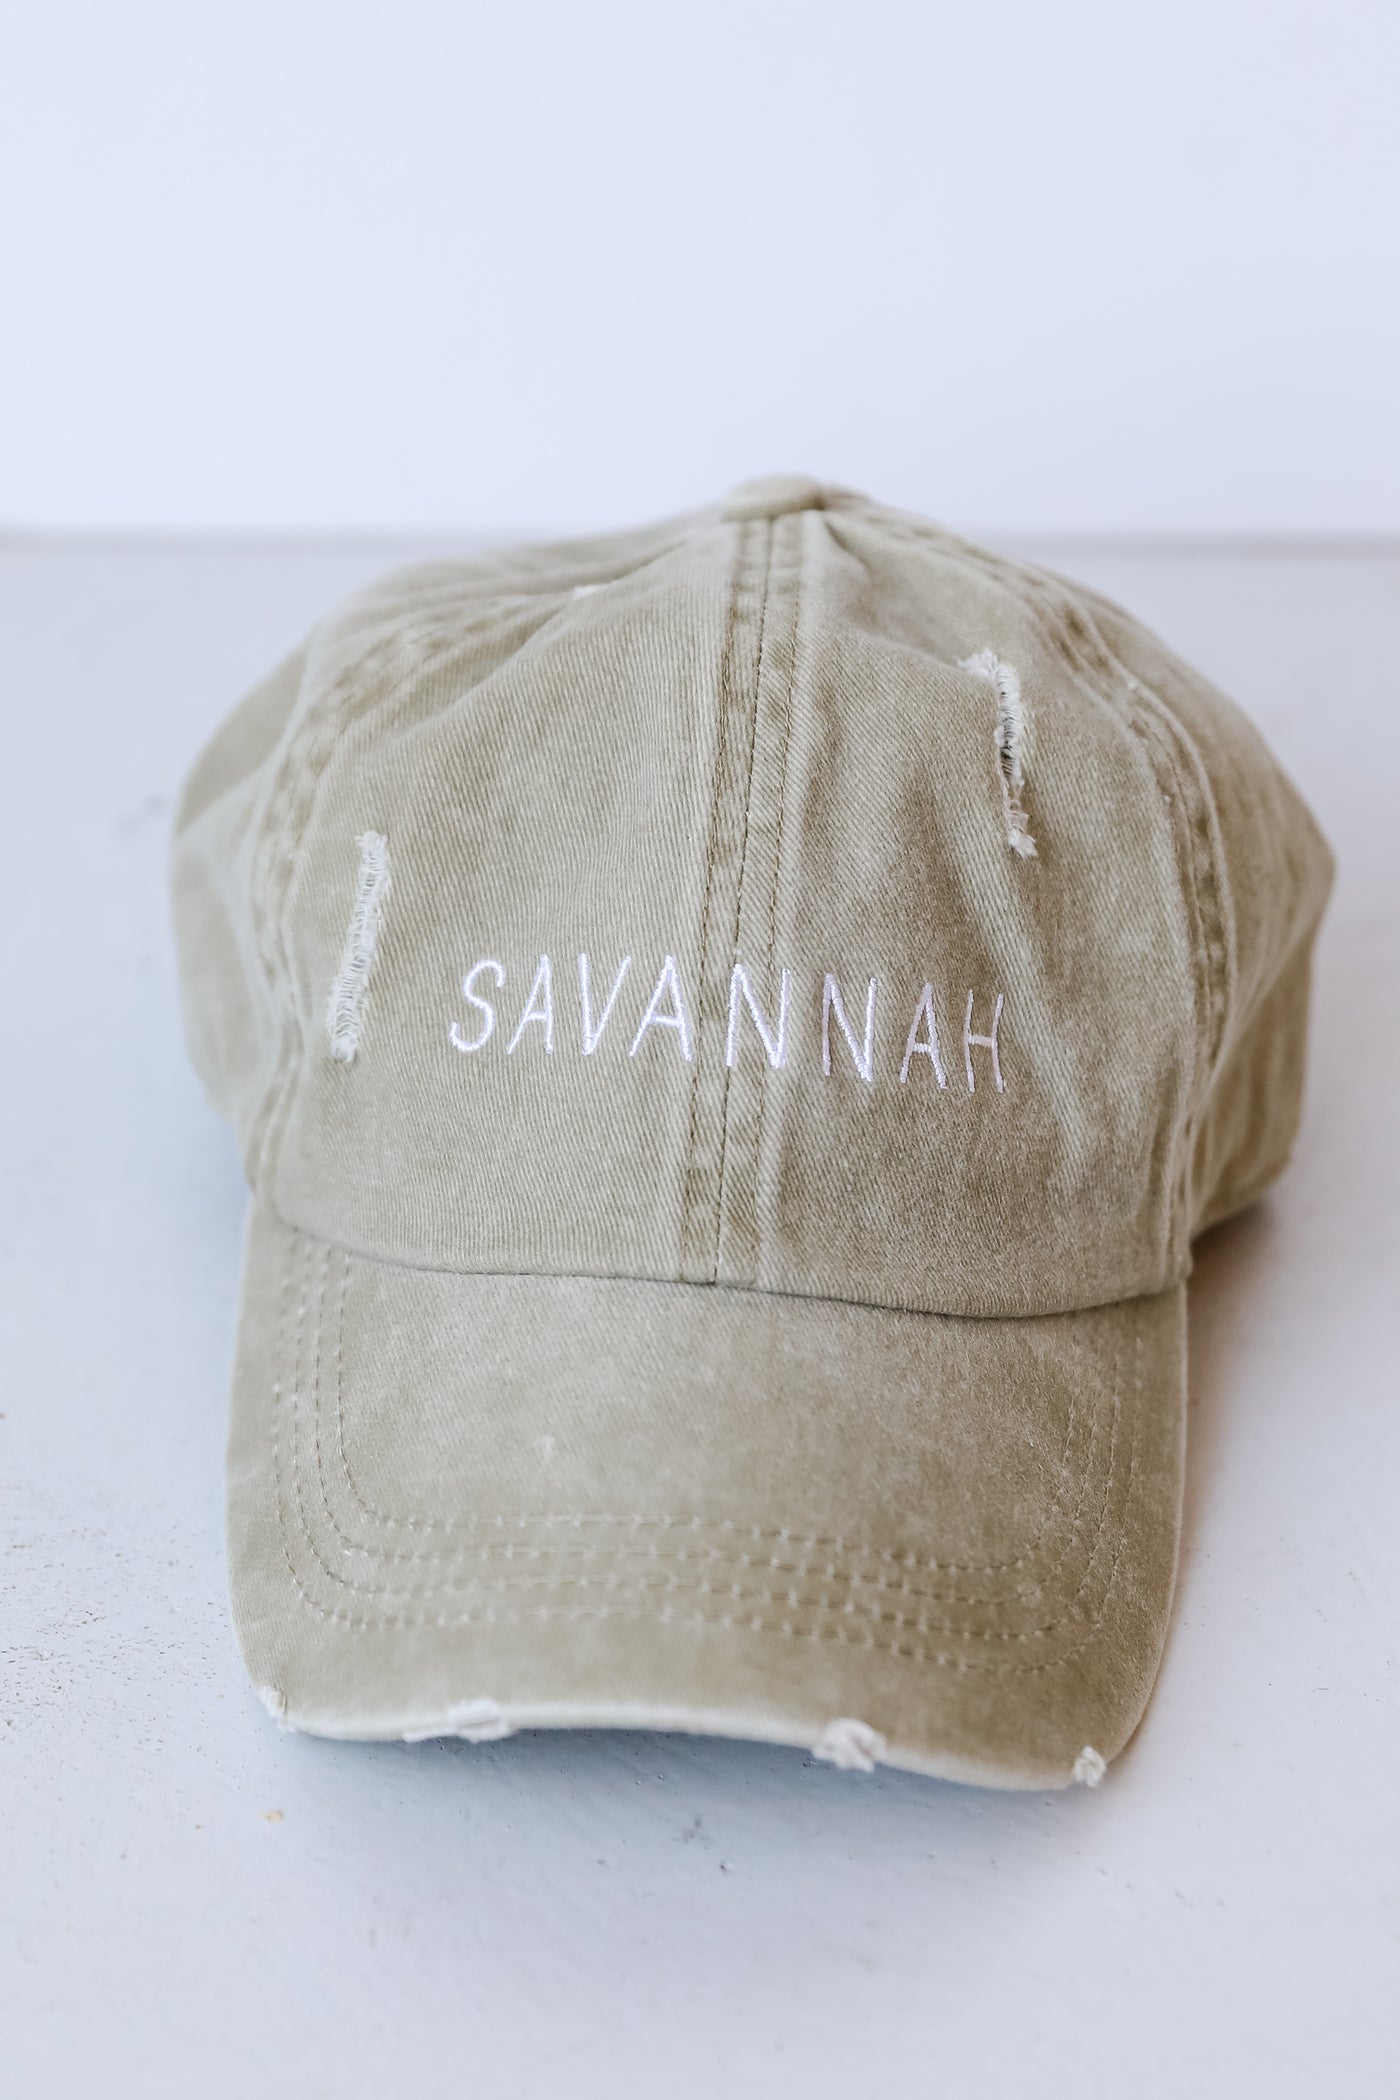 Savannah Vintage Embroidered Hat